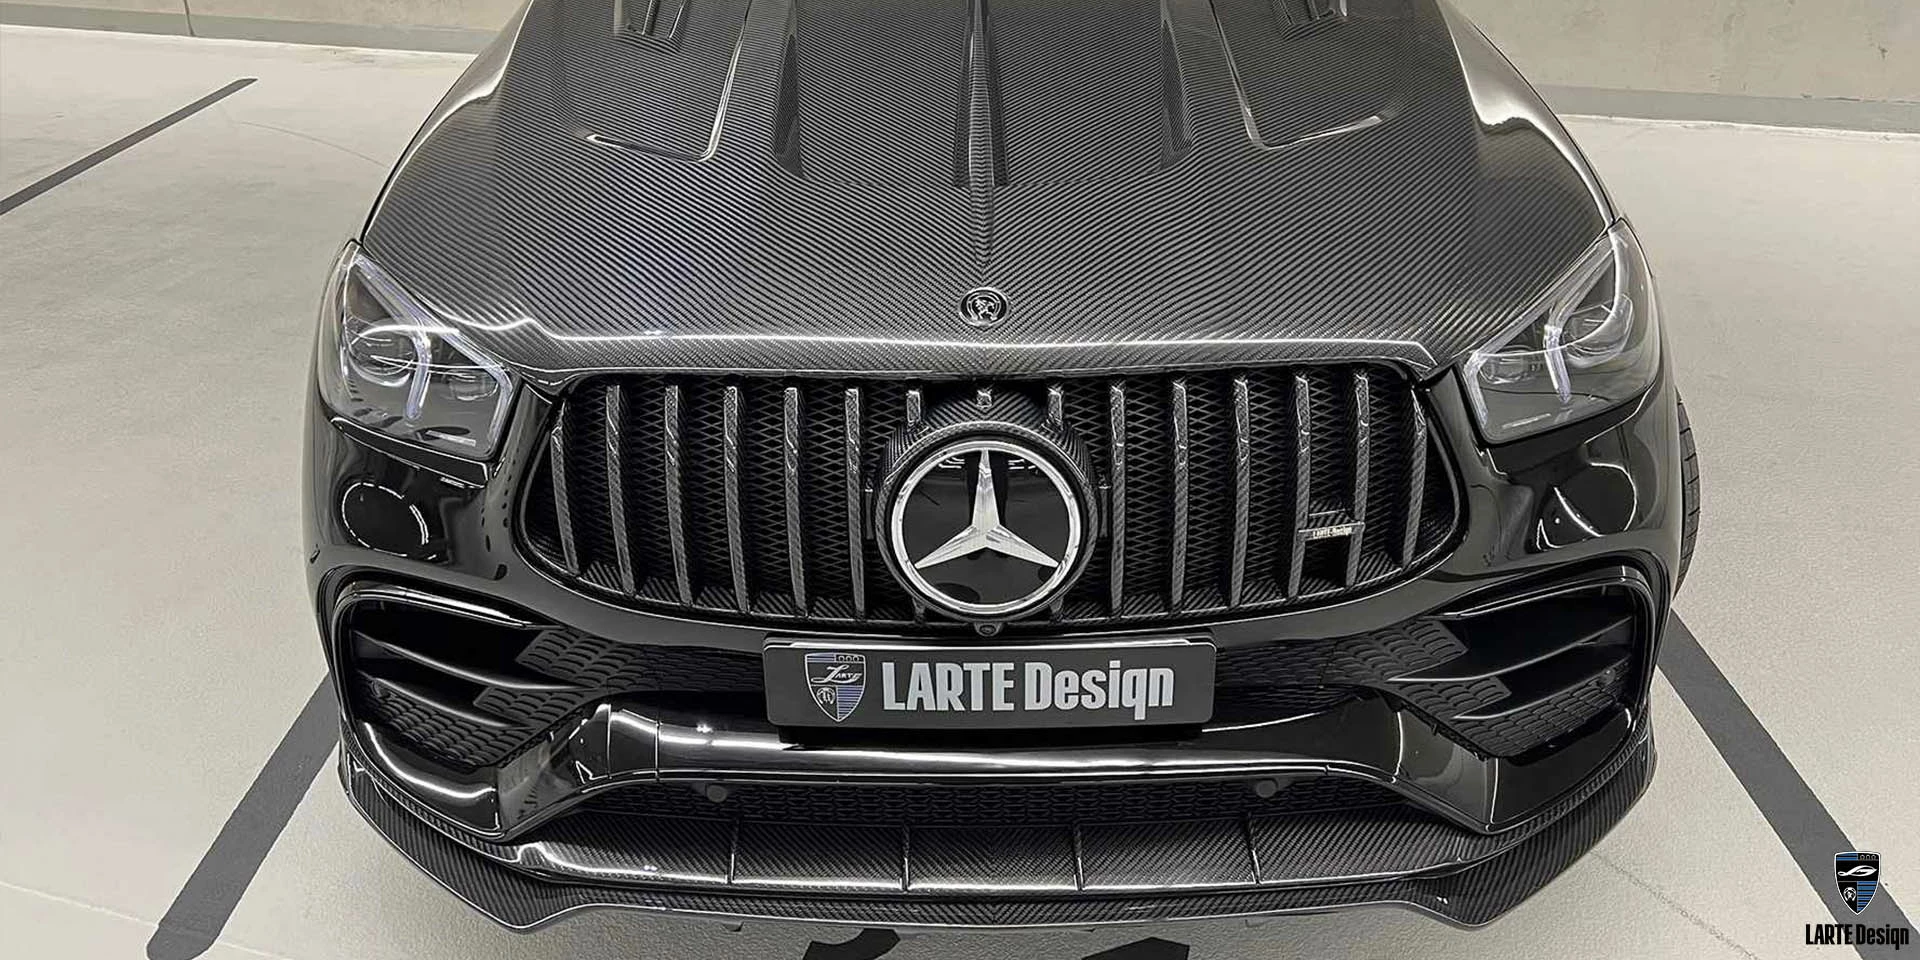 Erhalten Sie Kohlefaser-Seitenschweller für den Mercedes-Benz GLE Coupe 63 S 4MATIC+ С167 in Selenitgrau Metallic